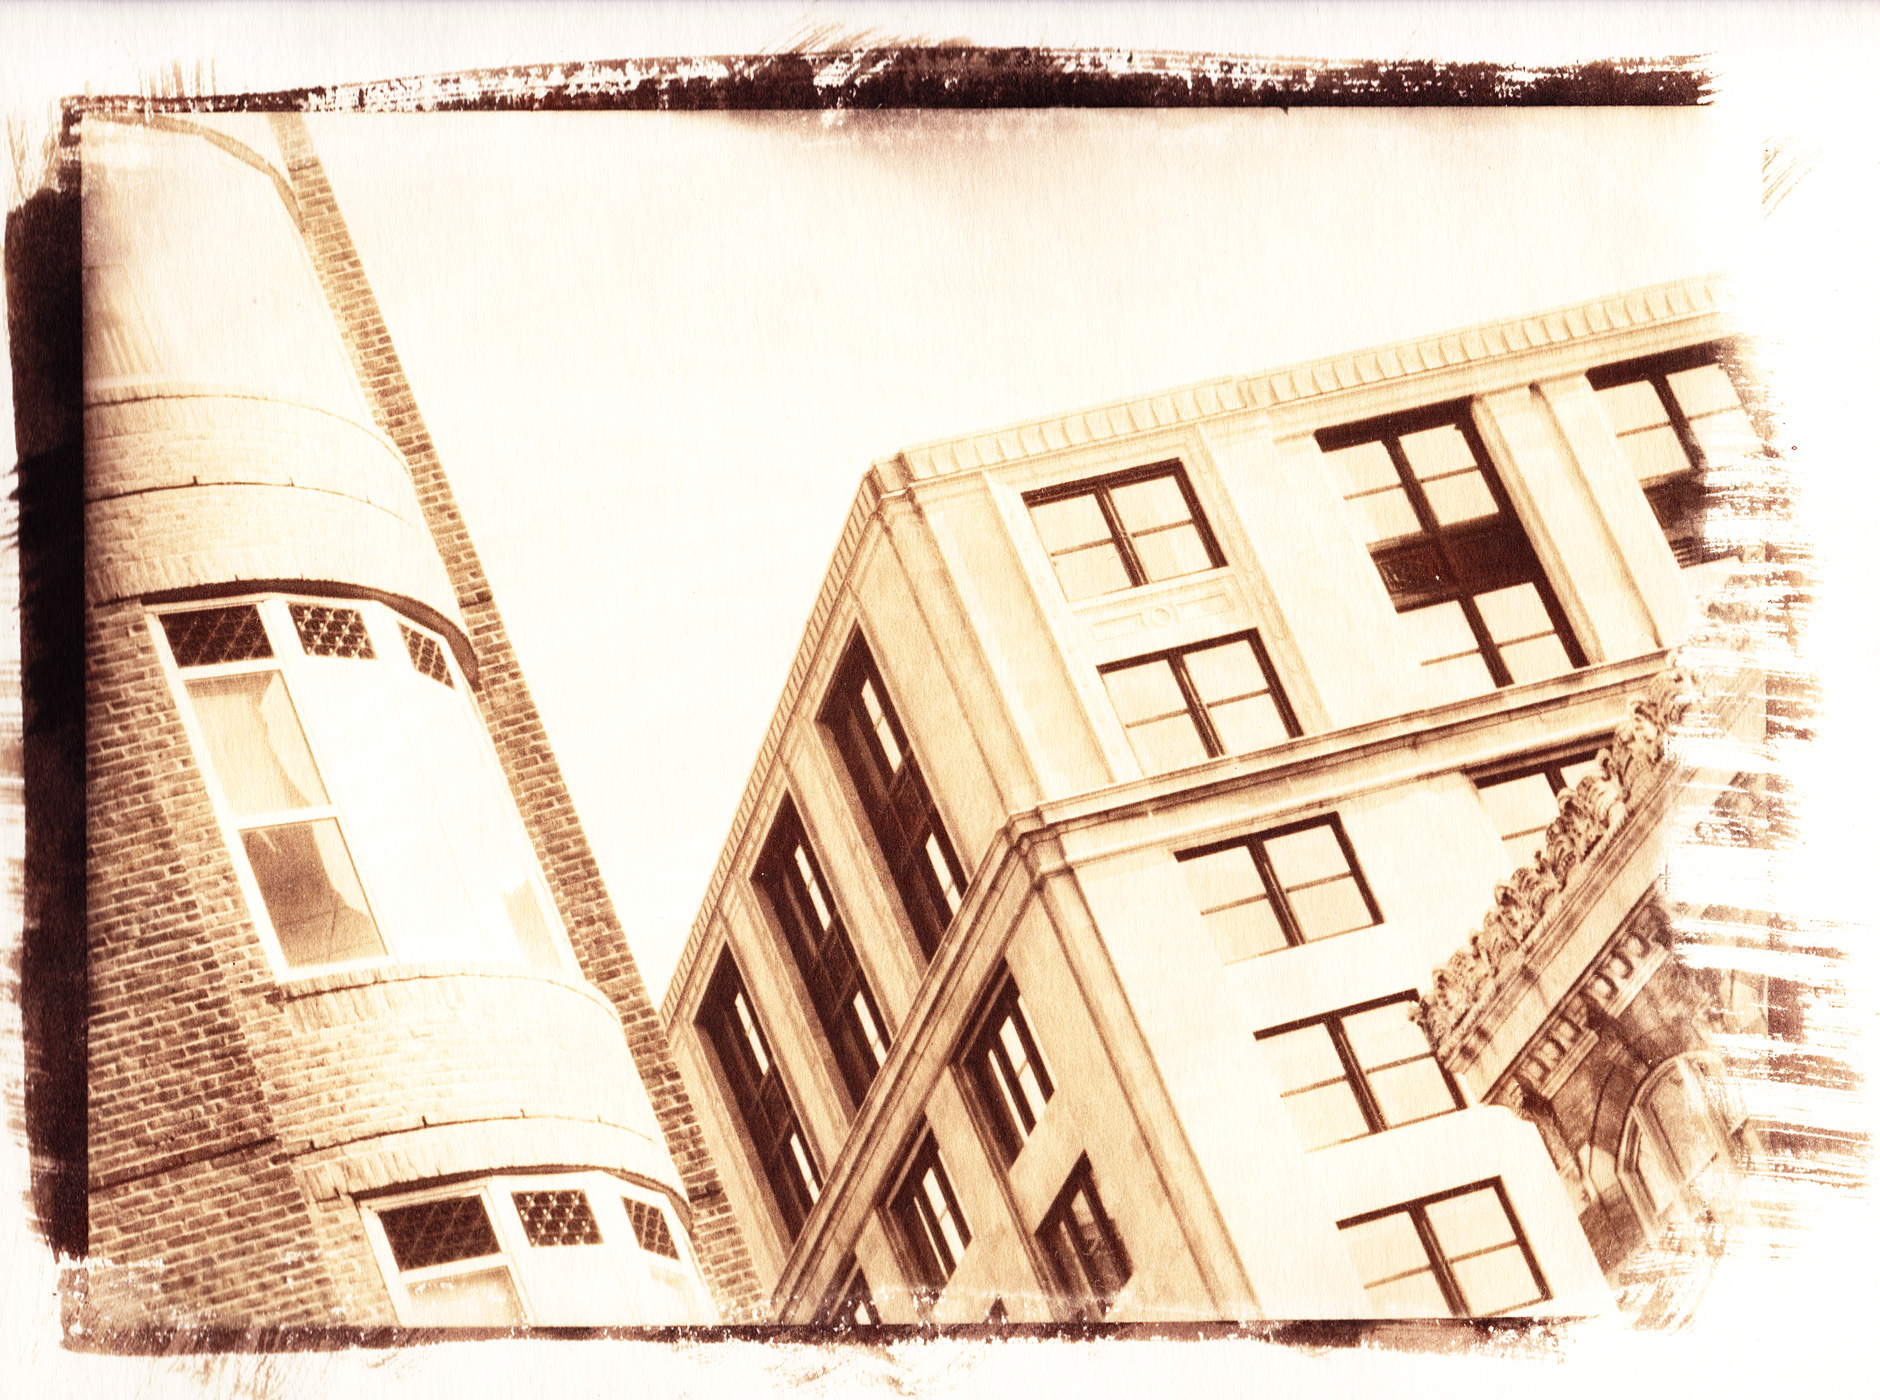 Van dyke brown on paper image of a building